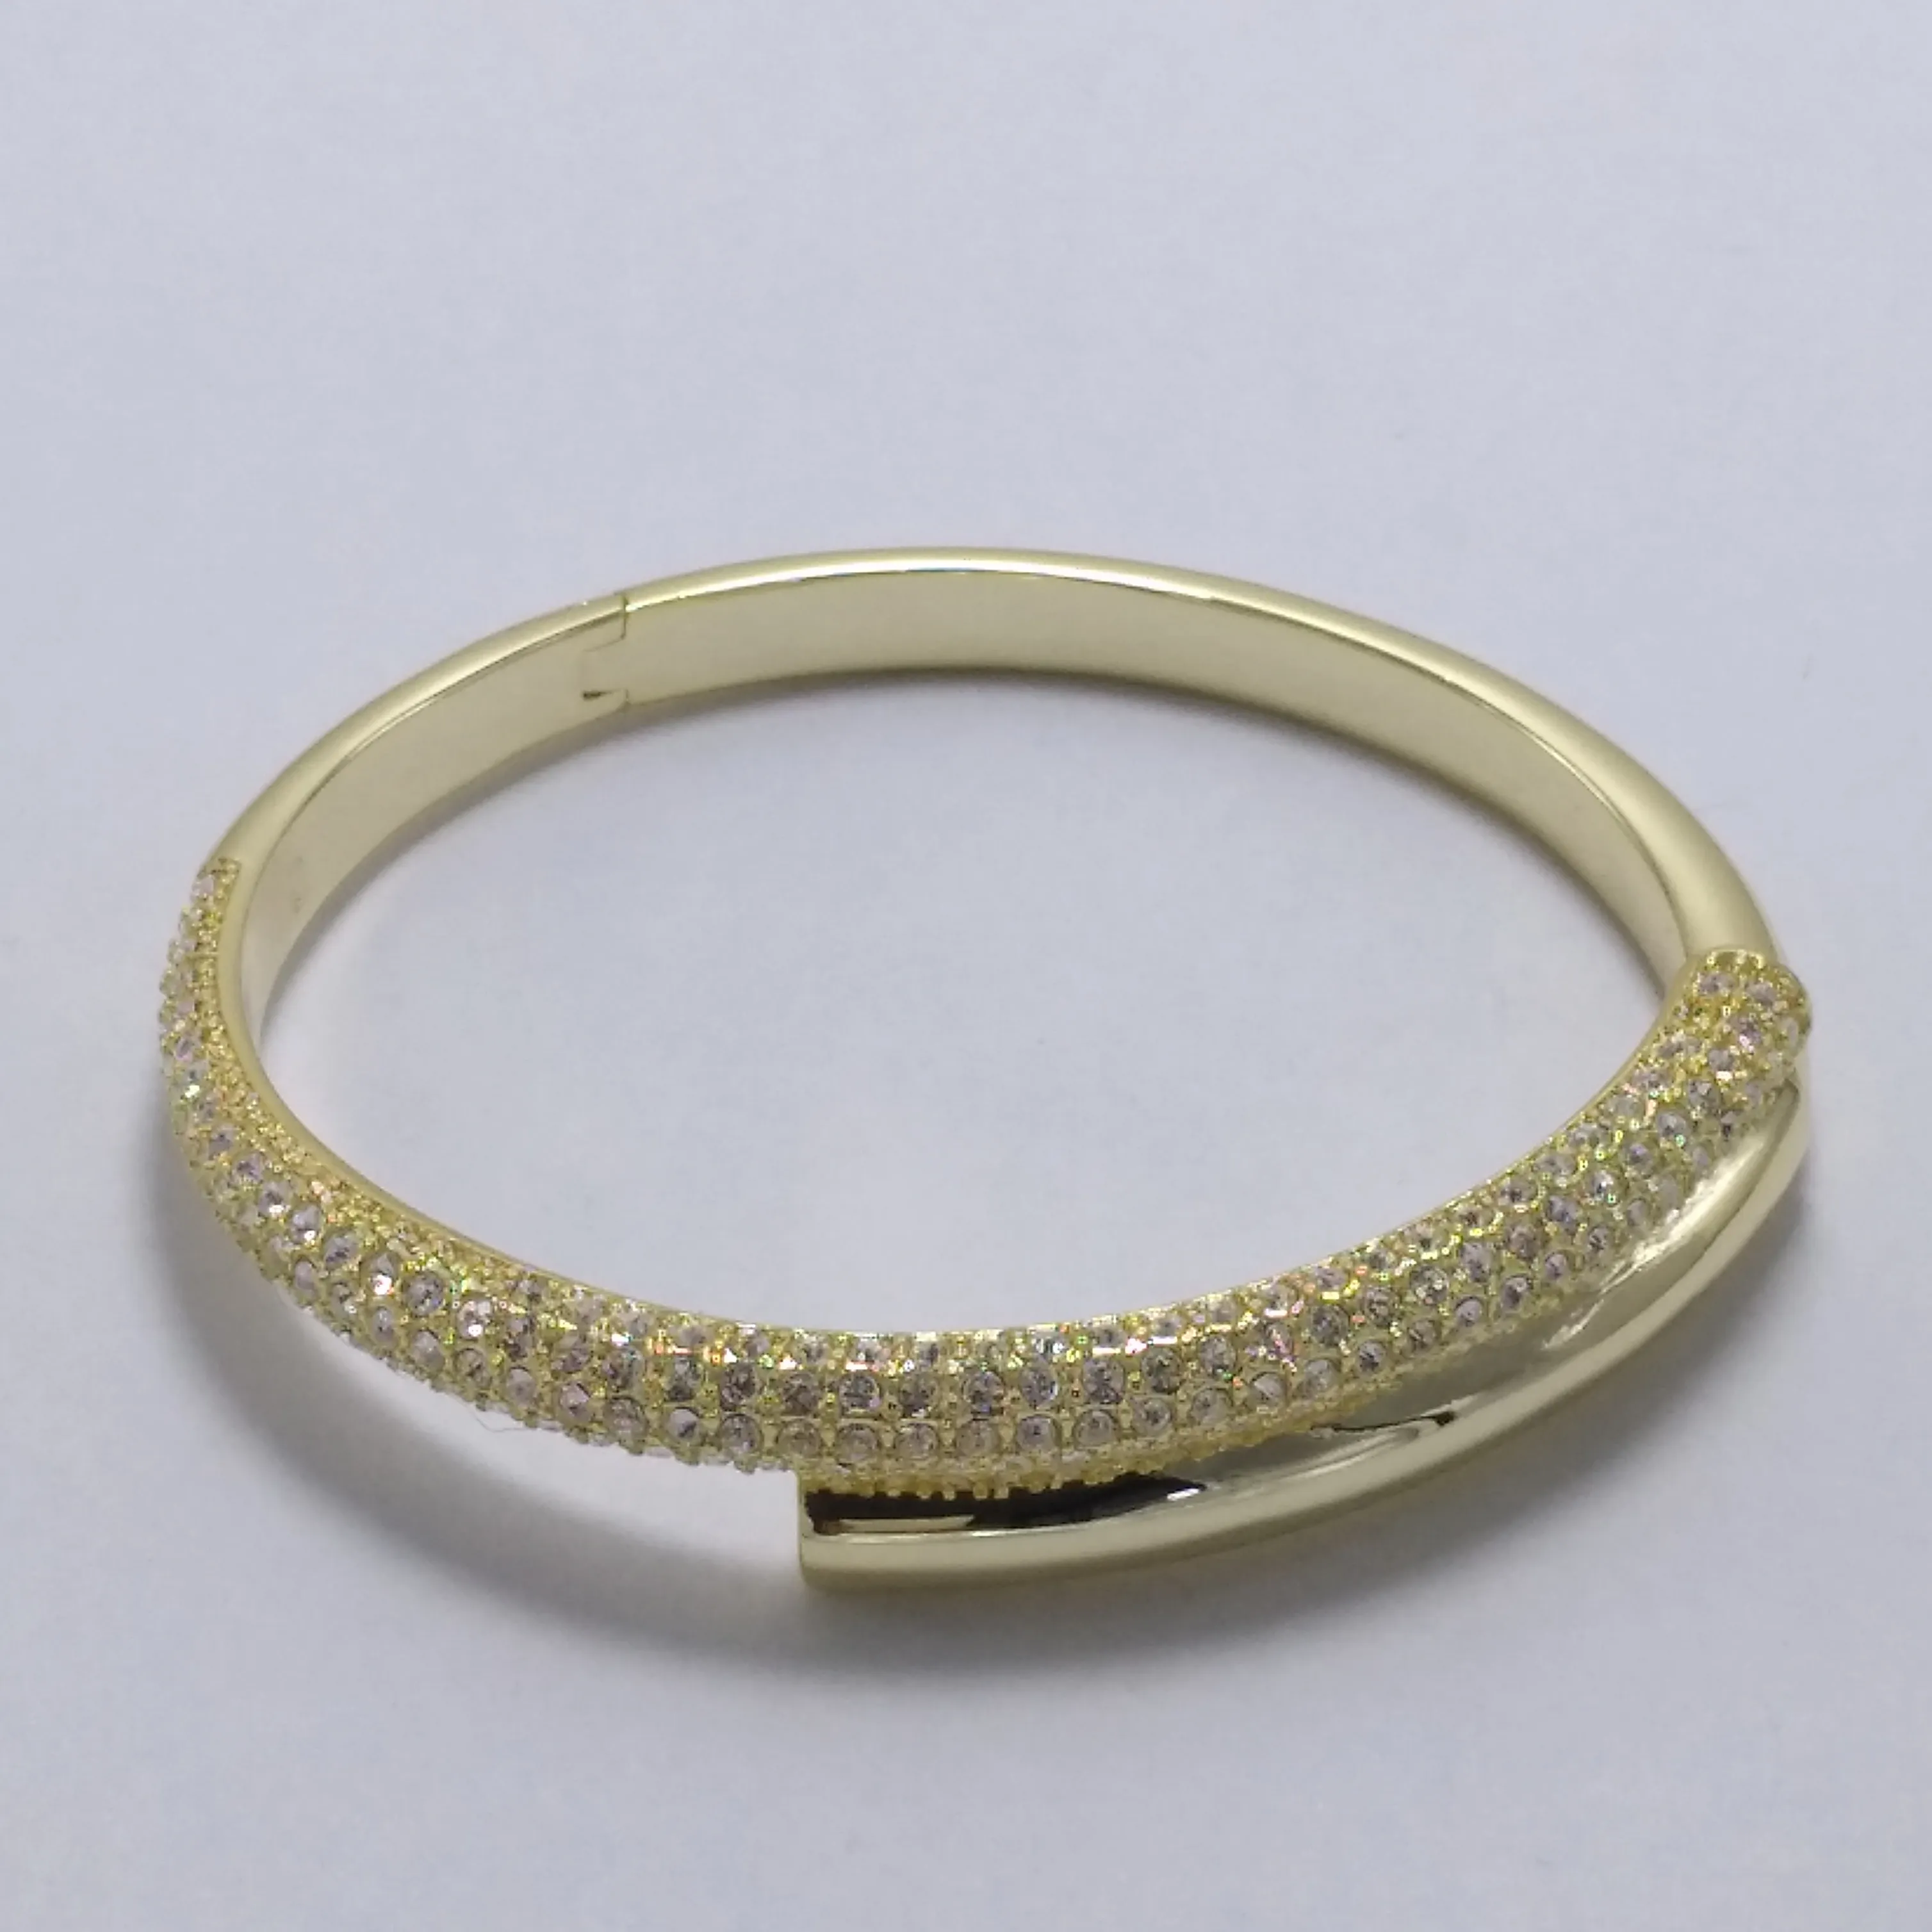 Biżuteria z bransoletki złotej jest odpowiednia do kobiecego uroku biżuteria bransoletka